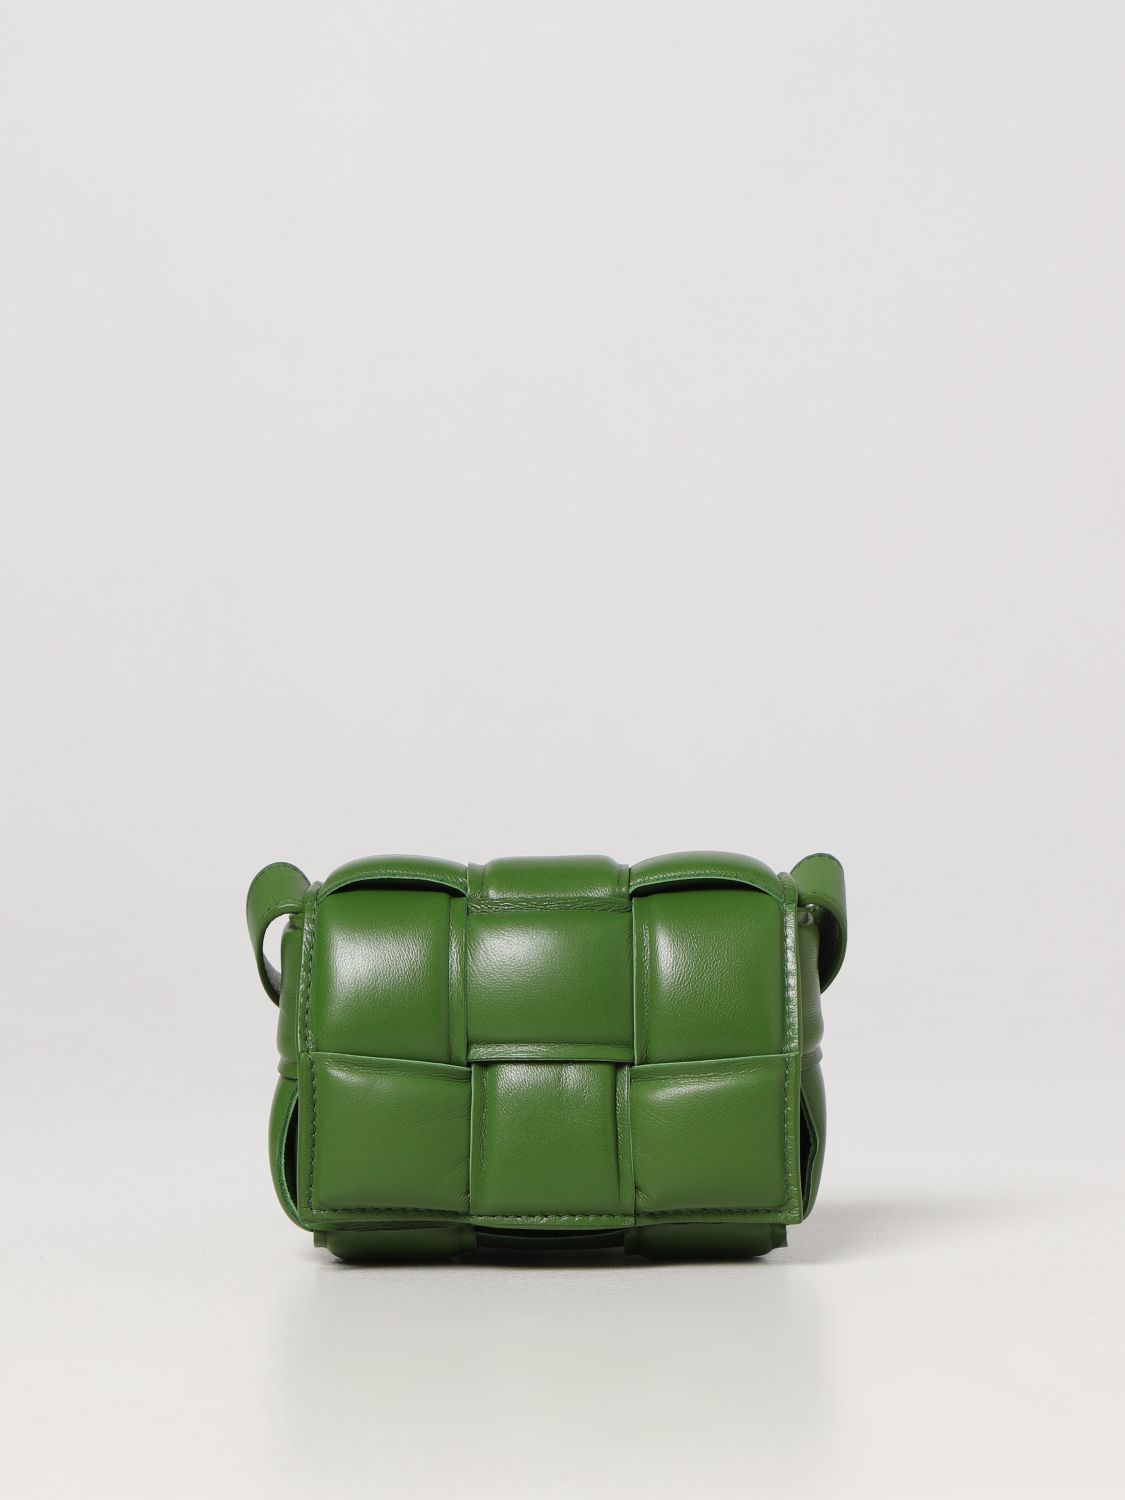 BOTTEGA VENETA: Cassette bag in woven nappa leather - Green